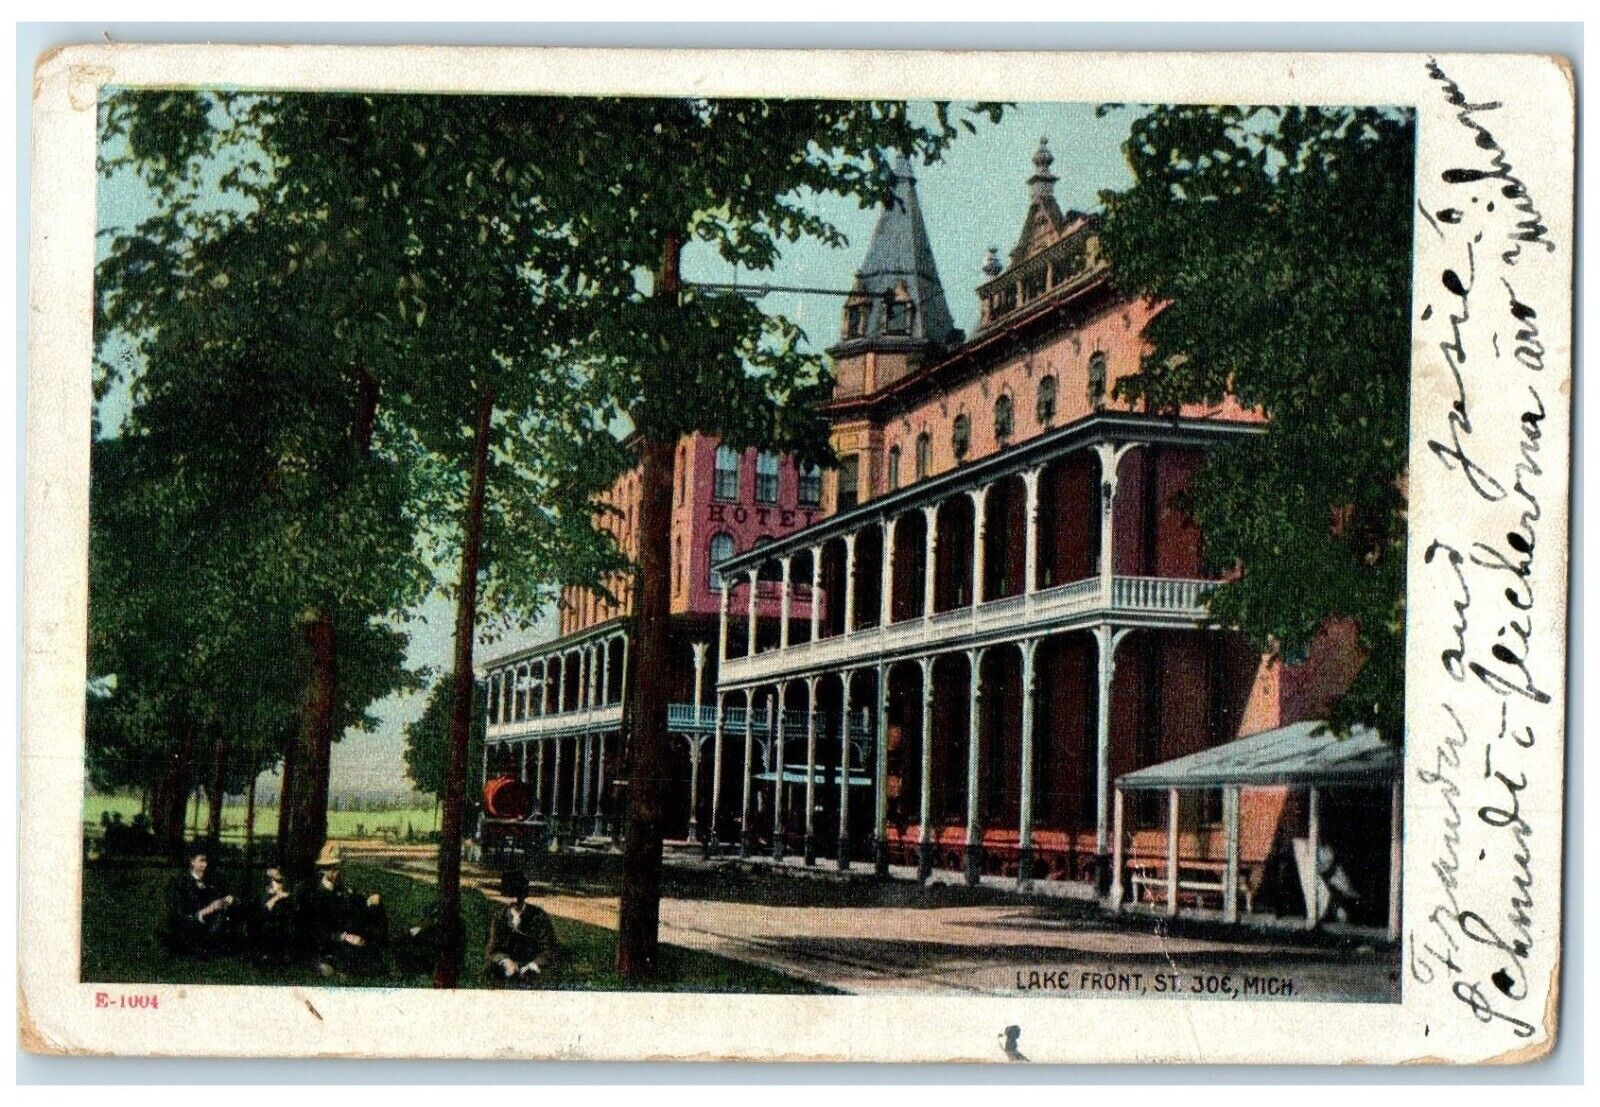 1907 Lake Front Exterior View Building St. Joe Michigan Vintage Antique Postcard